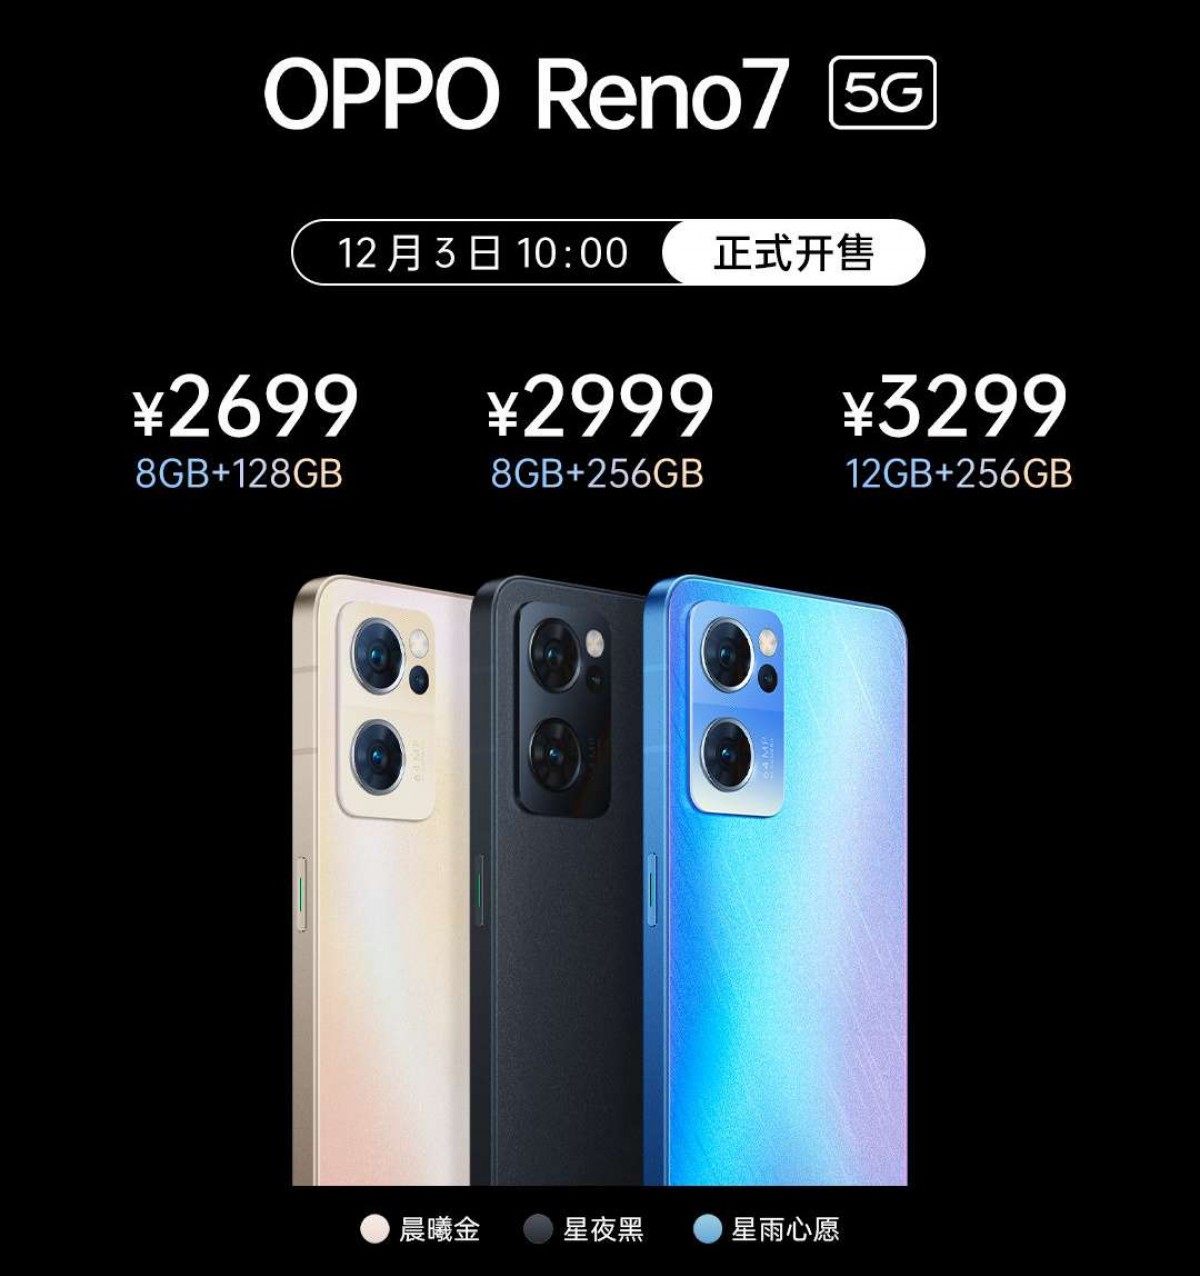 Oppo Reno7 series is here - Reno7 5G, Reno7 Pro 5G and Reno7 SE 5G